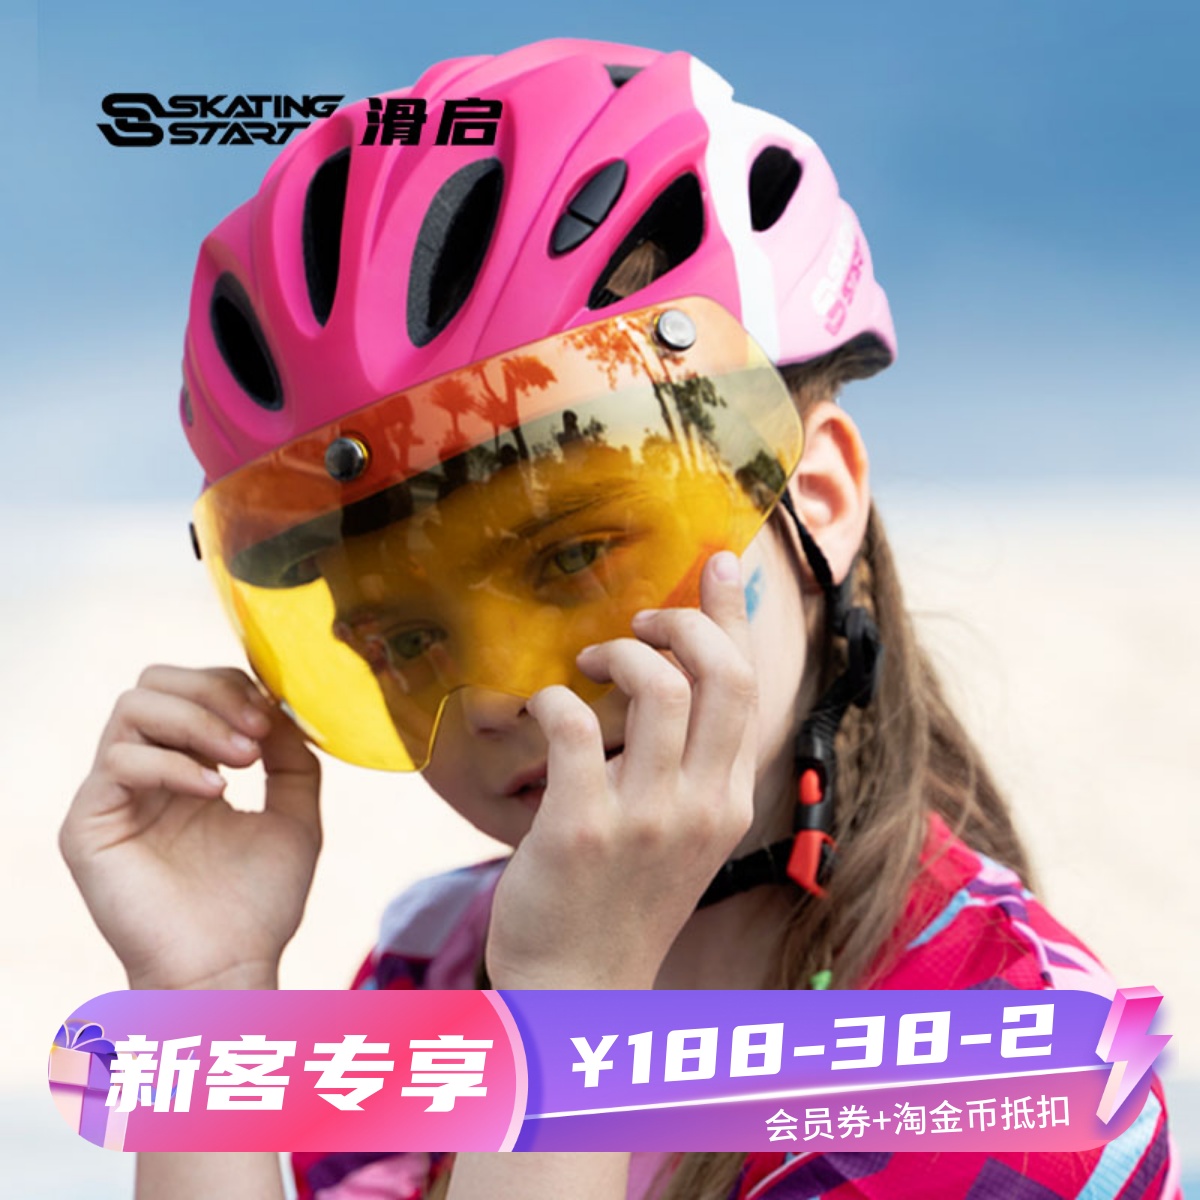 滑启儿童磁吸护目镜轮滑速滑自行车头盔专业滑轮溜冰骑行防护护具